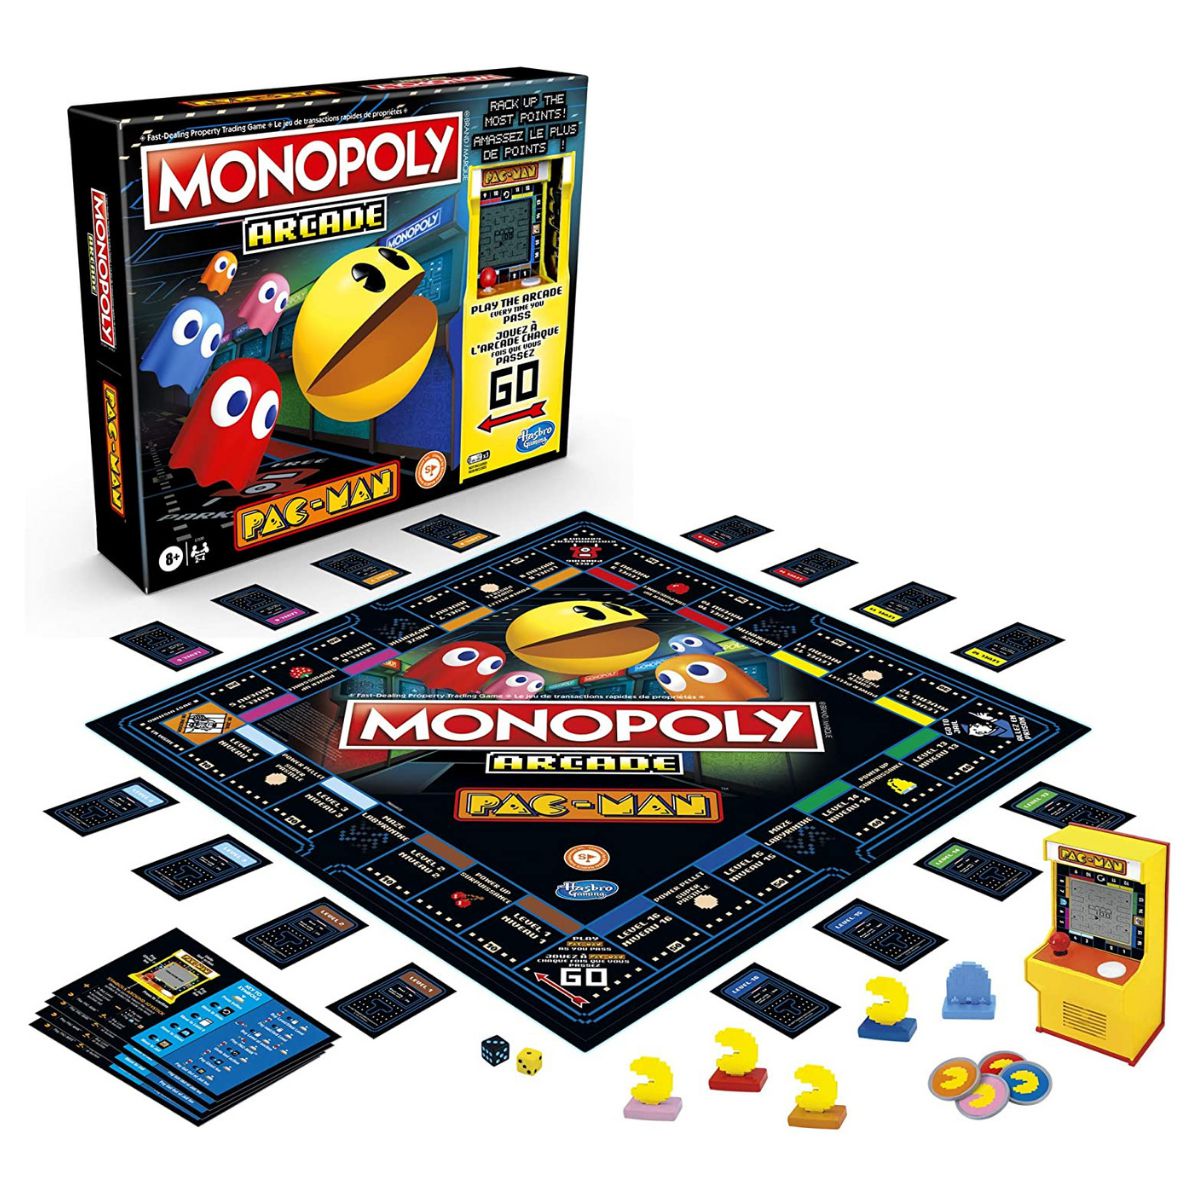 MONOPOLY jogo online gratuito em